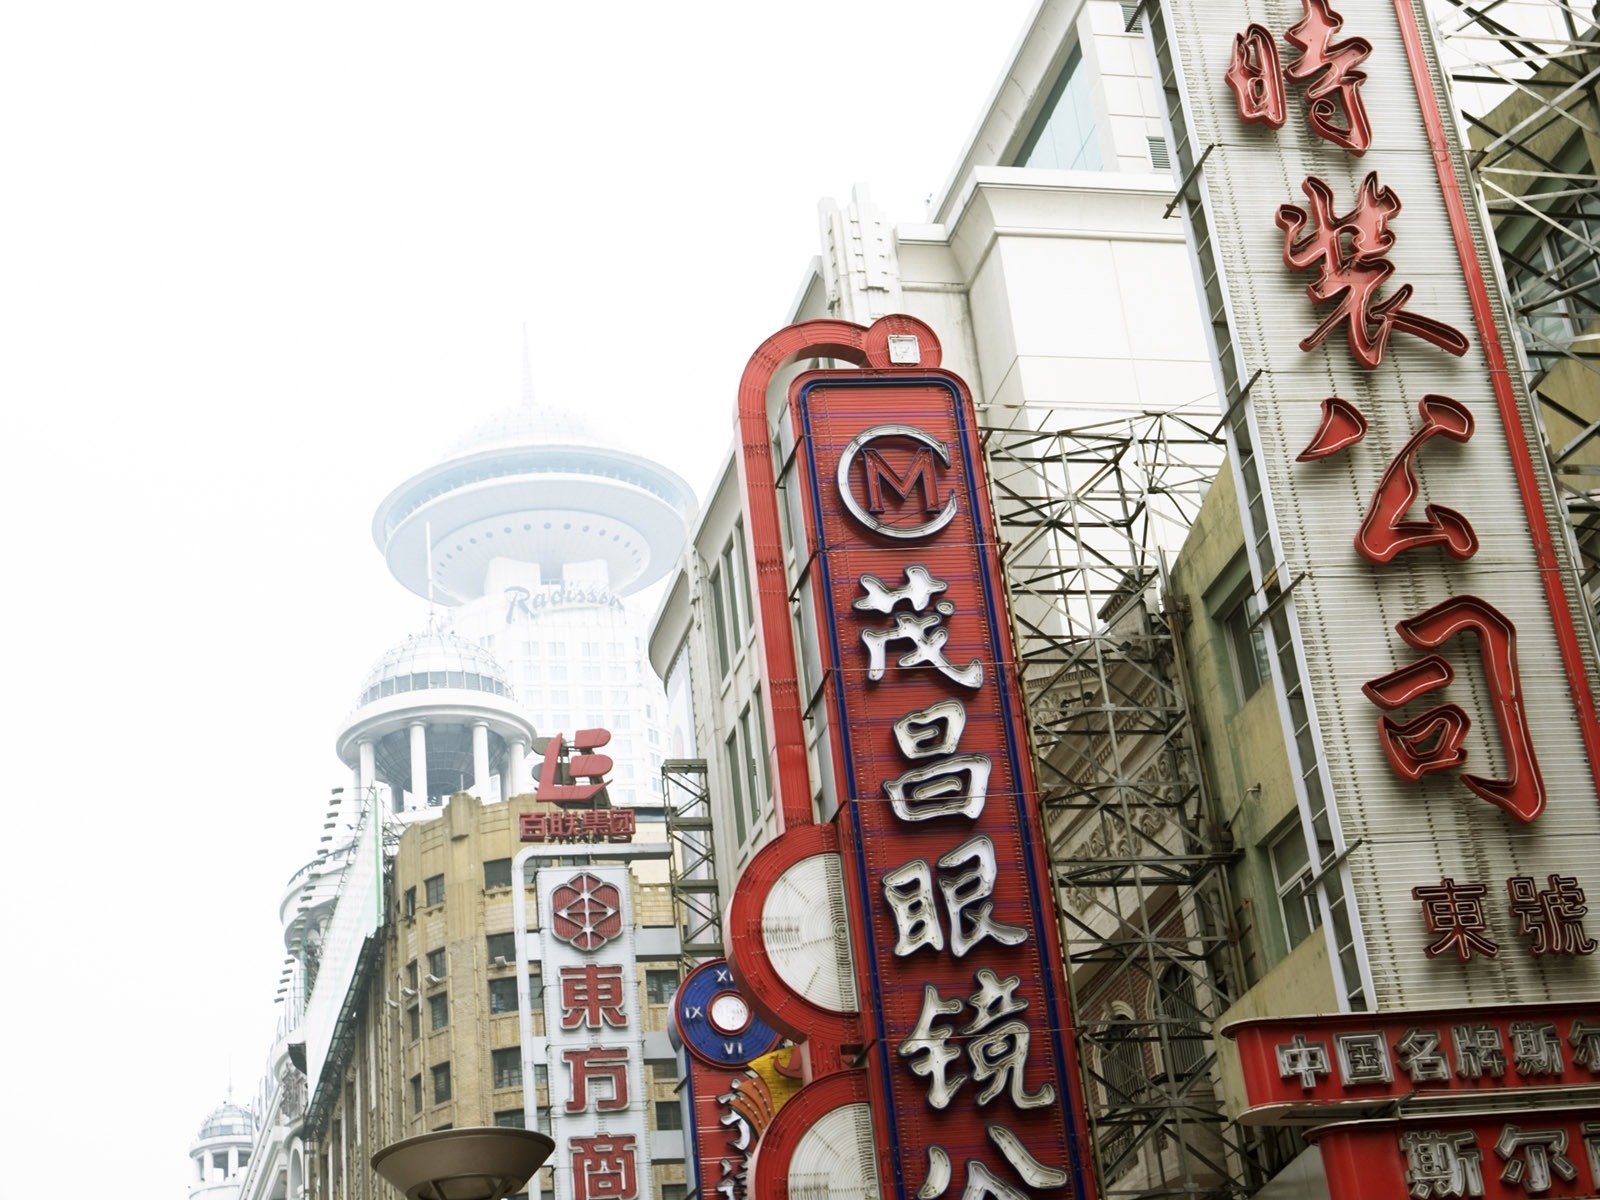 Chroniques de papier peint urbaines de la Chine #15 - 1600x1200